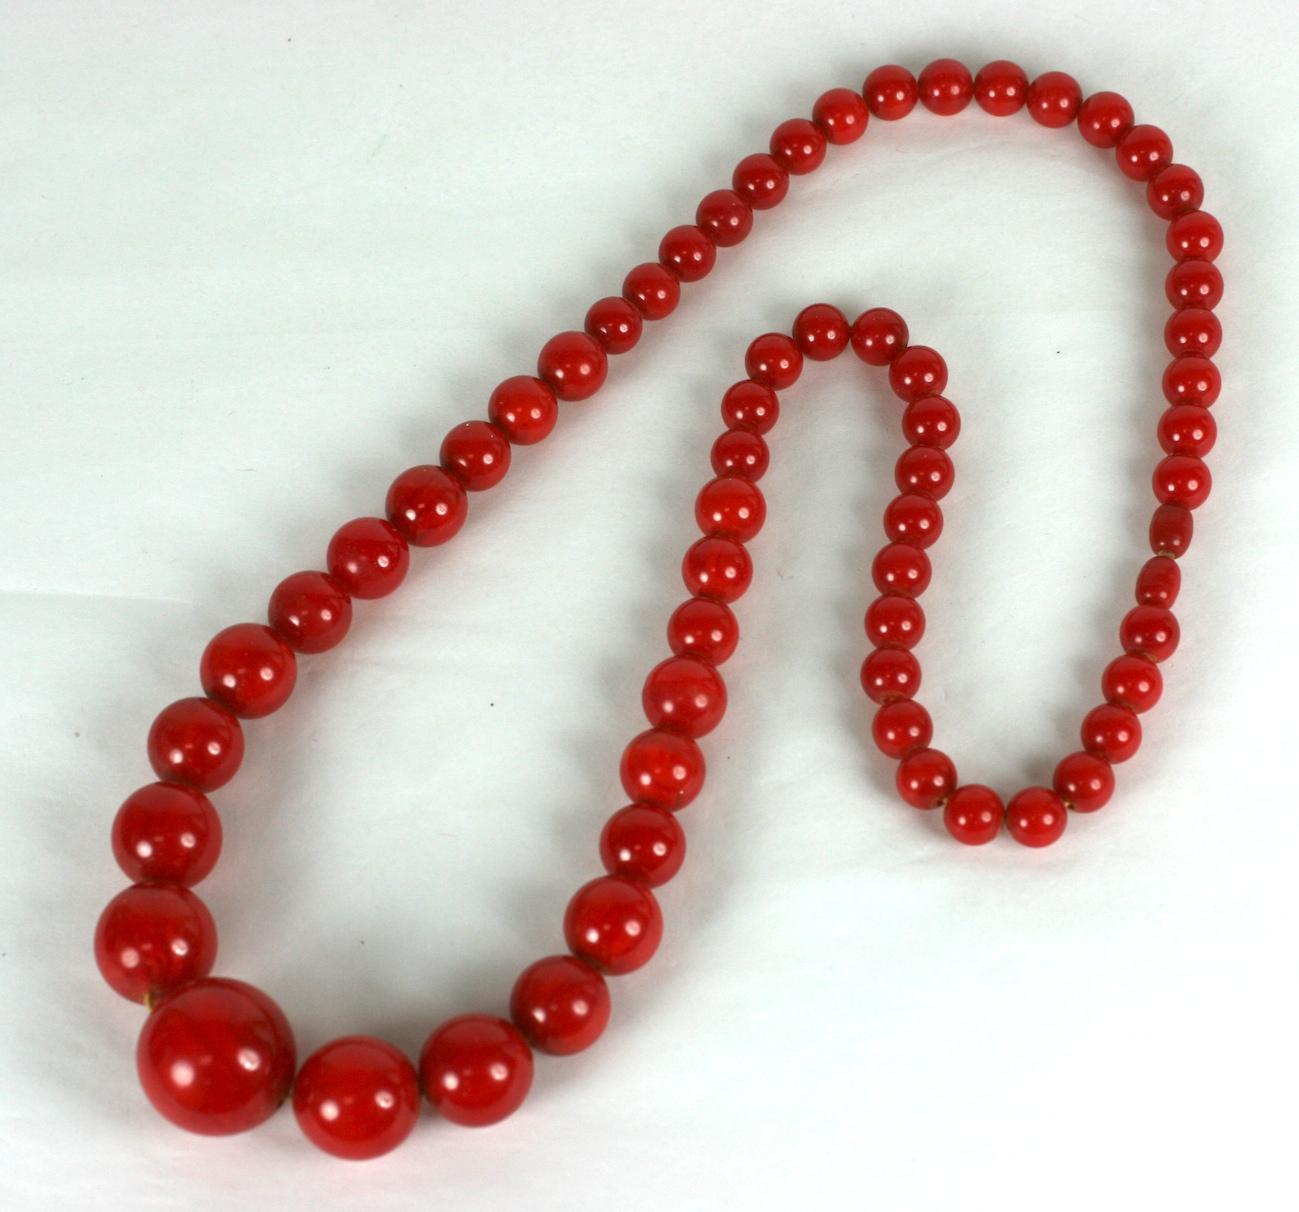 Ensemble de perles et de bracelets en bakélite Art déco des années 1930. Le collier est composé de perles graduées et d'un simple fermoir torsadé caché. Le bracelet est composé de deux brins et est rehaussé de rondelles de cristal pavées.
Il s'agit